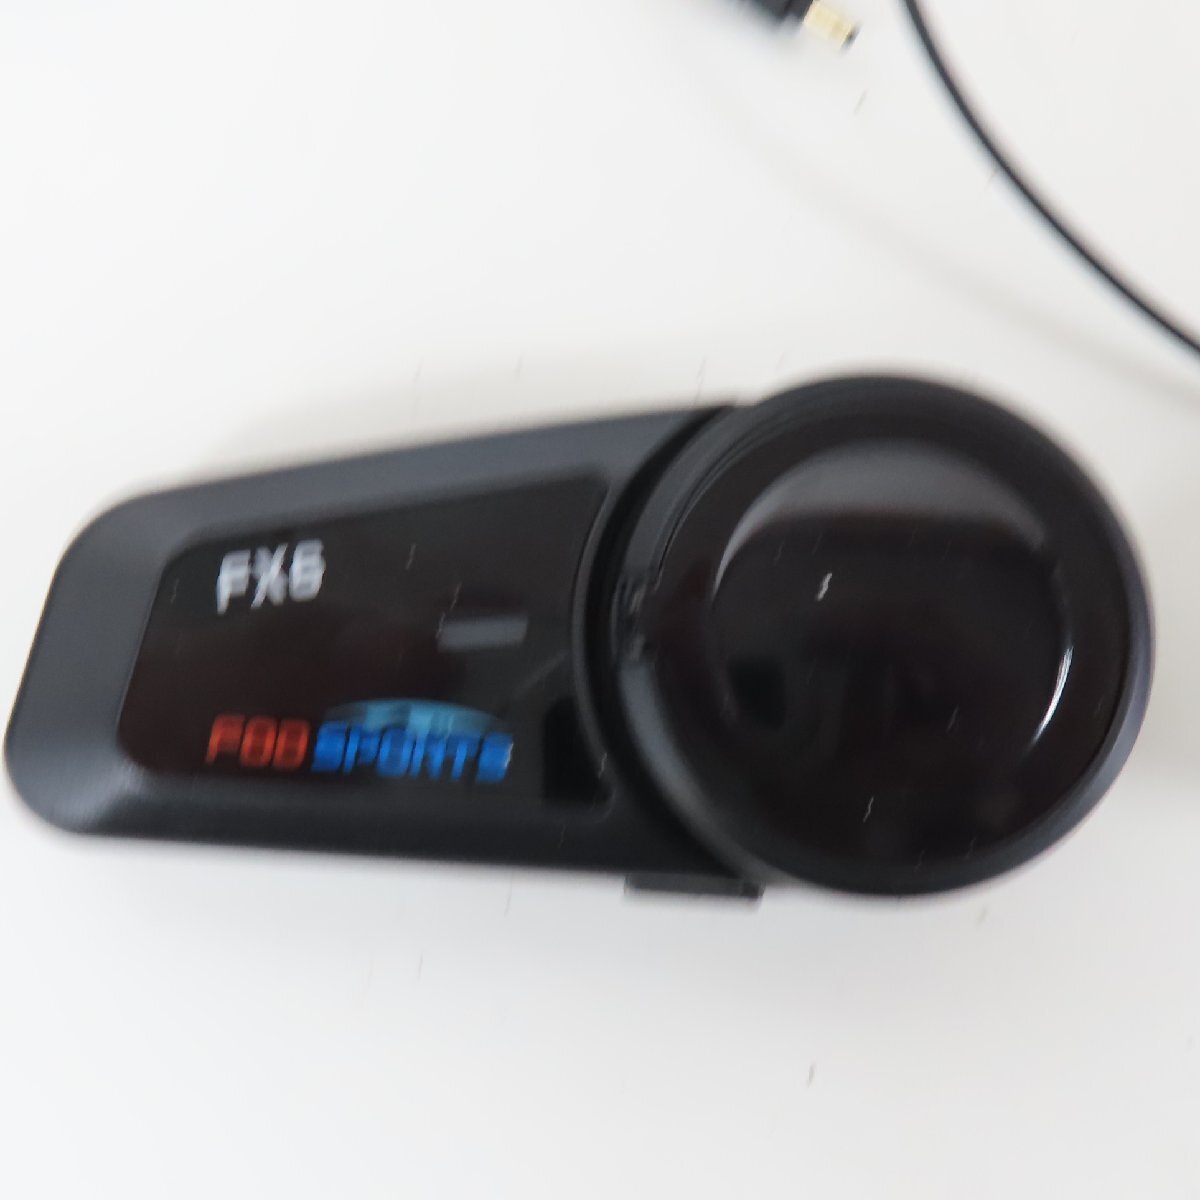 【美品】【本体動作確認済み】FODSPORTS FX6 Bluetooth インカム ペアユニット 無線 トランシーバー バイク 二輪 ツーリング オートバイ_画像3